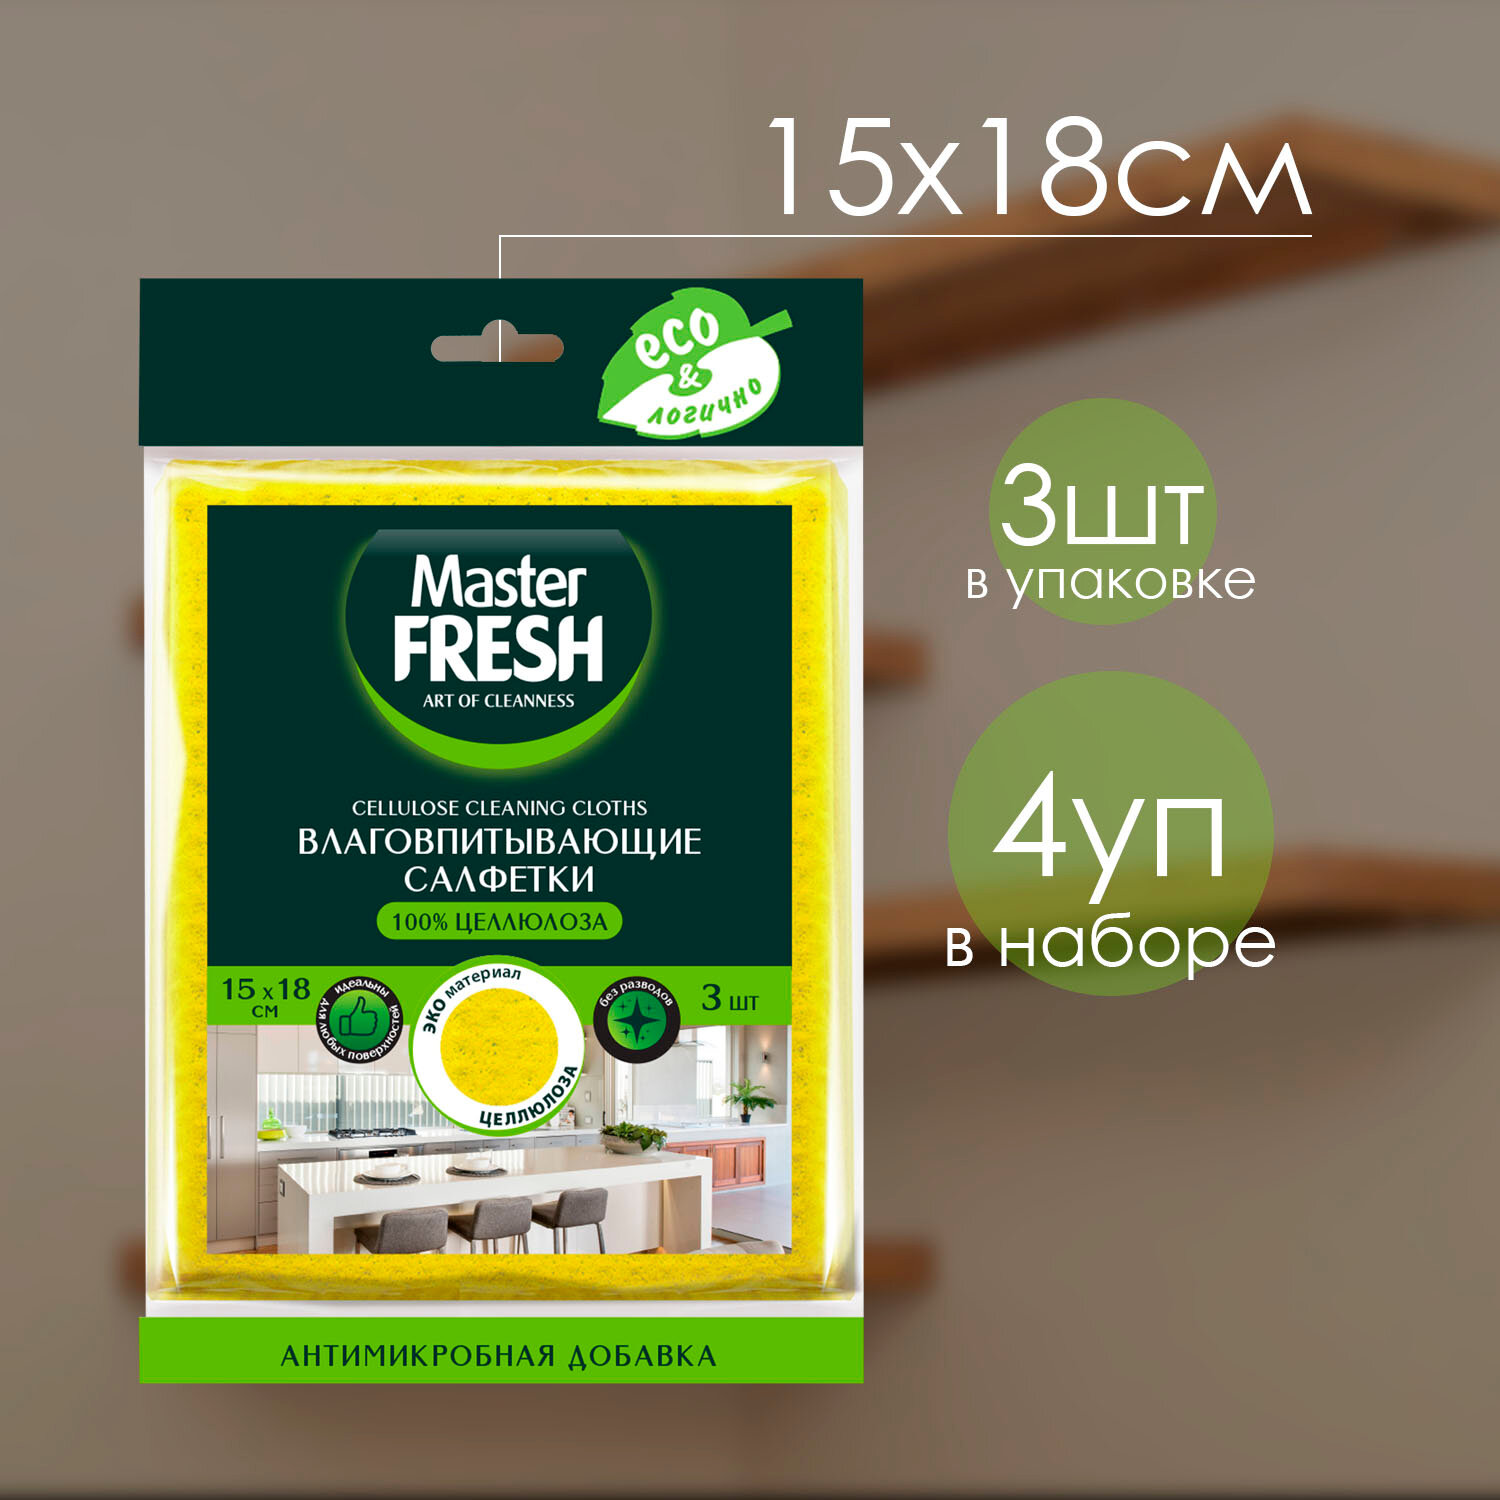 Салфетки Master Fresh ЭКО целлюлозные с антимикробной добавкой 15*18см 3шт SPONTEX испания ( 4 уп )